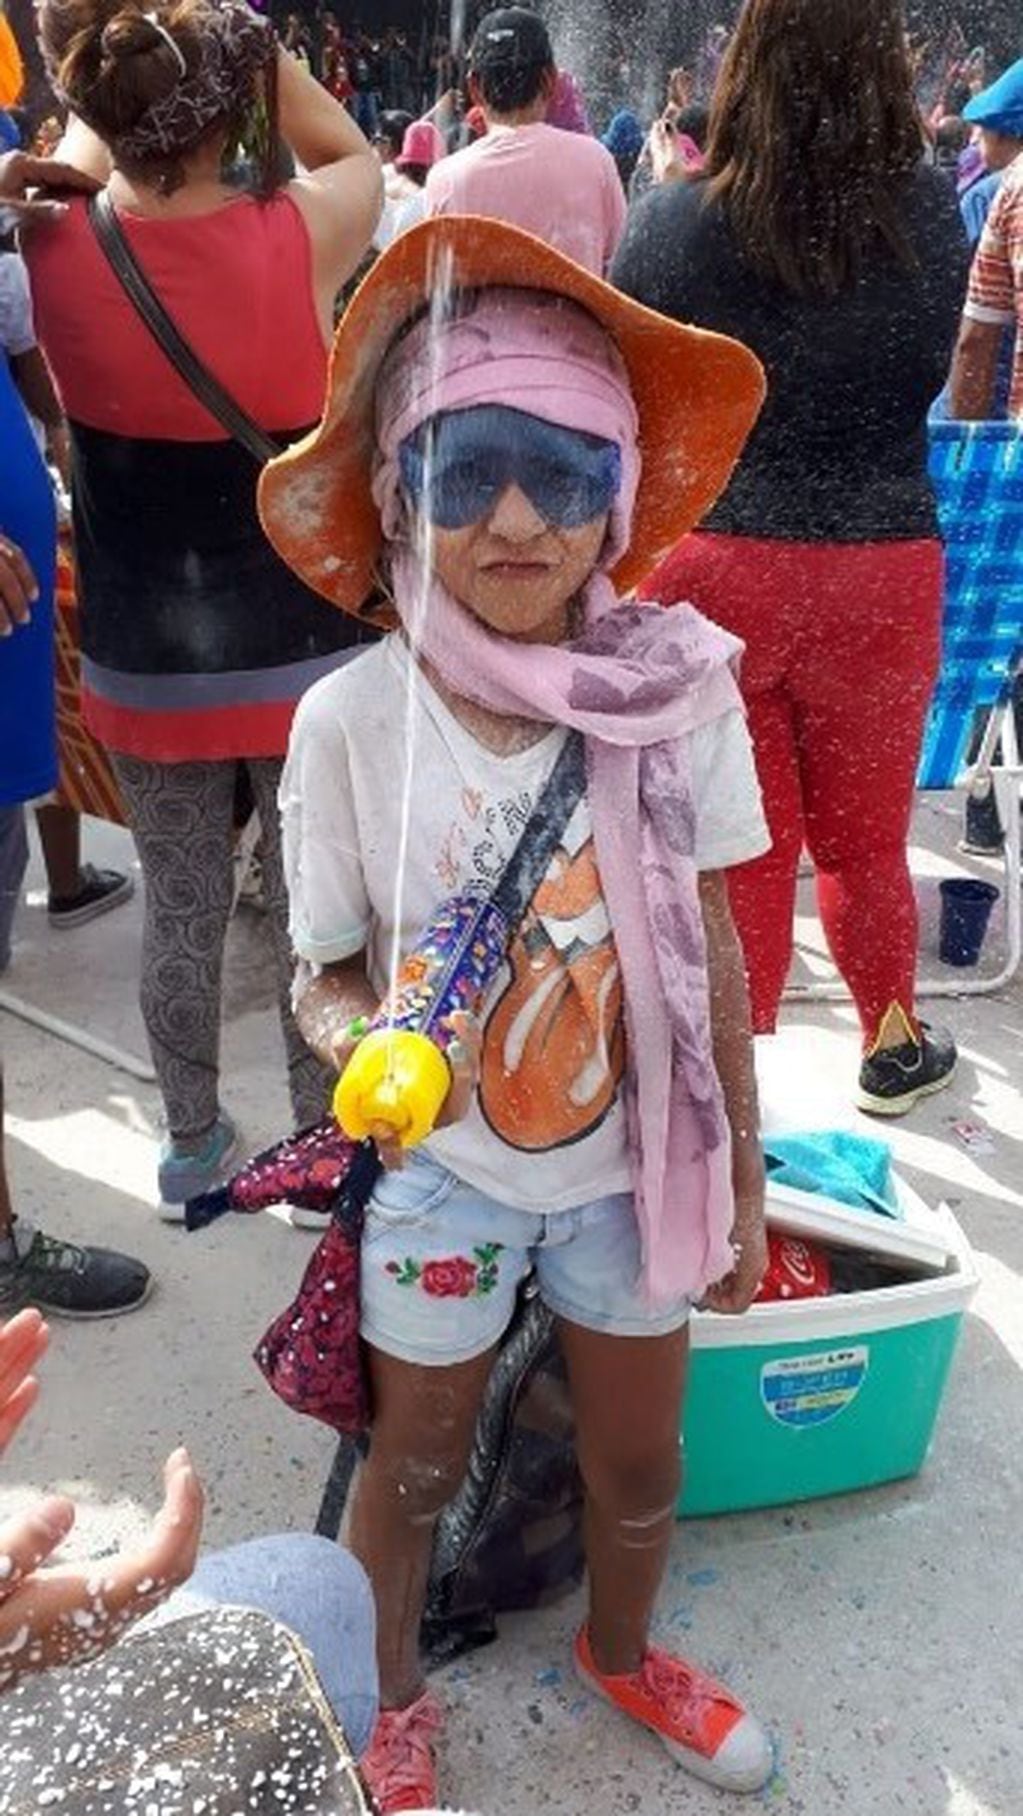 La niñez también pudo disfrutar de la propuesta del "carnavalódromo" en San Salvador de Jujuy.